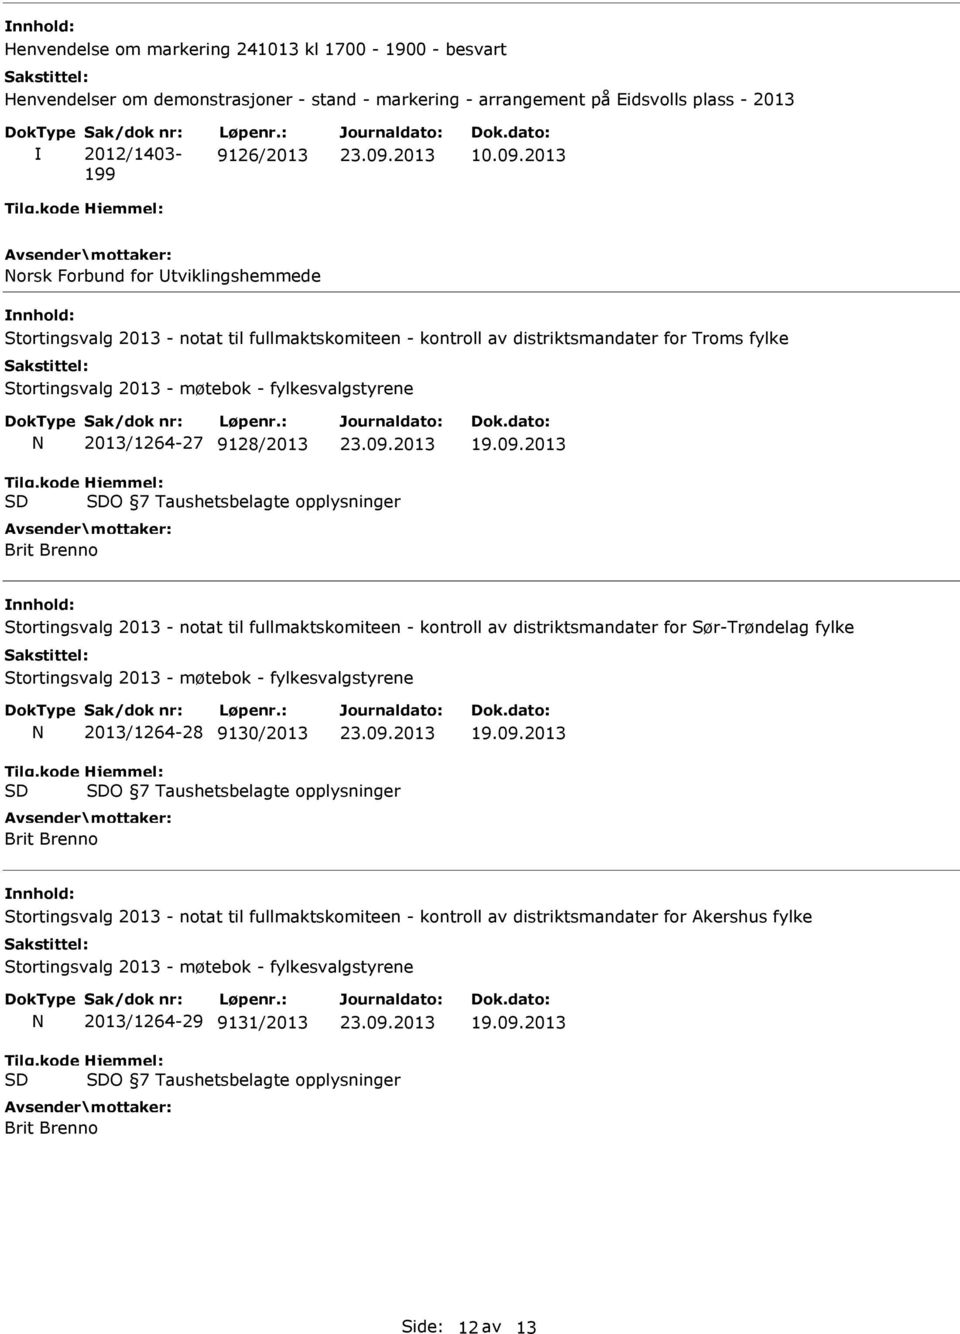 Taushetsbelagte opplysninger Stortingsvalg 2013 - notat til fullmaktskomiteen - kontroll av distriktsmandater for Sør-Trøndelag fylke 2013/1264-28 9130/2013 O 7